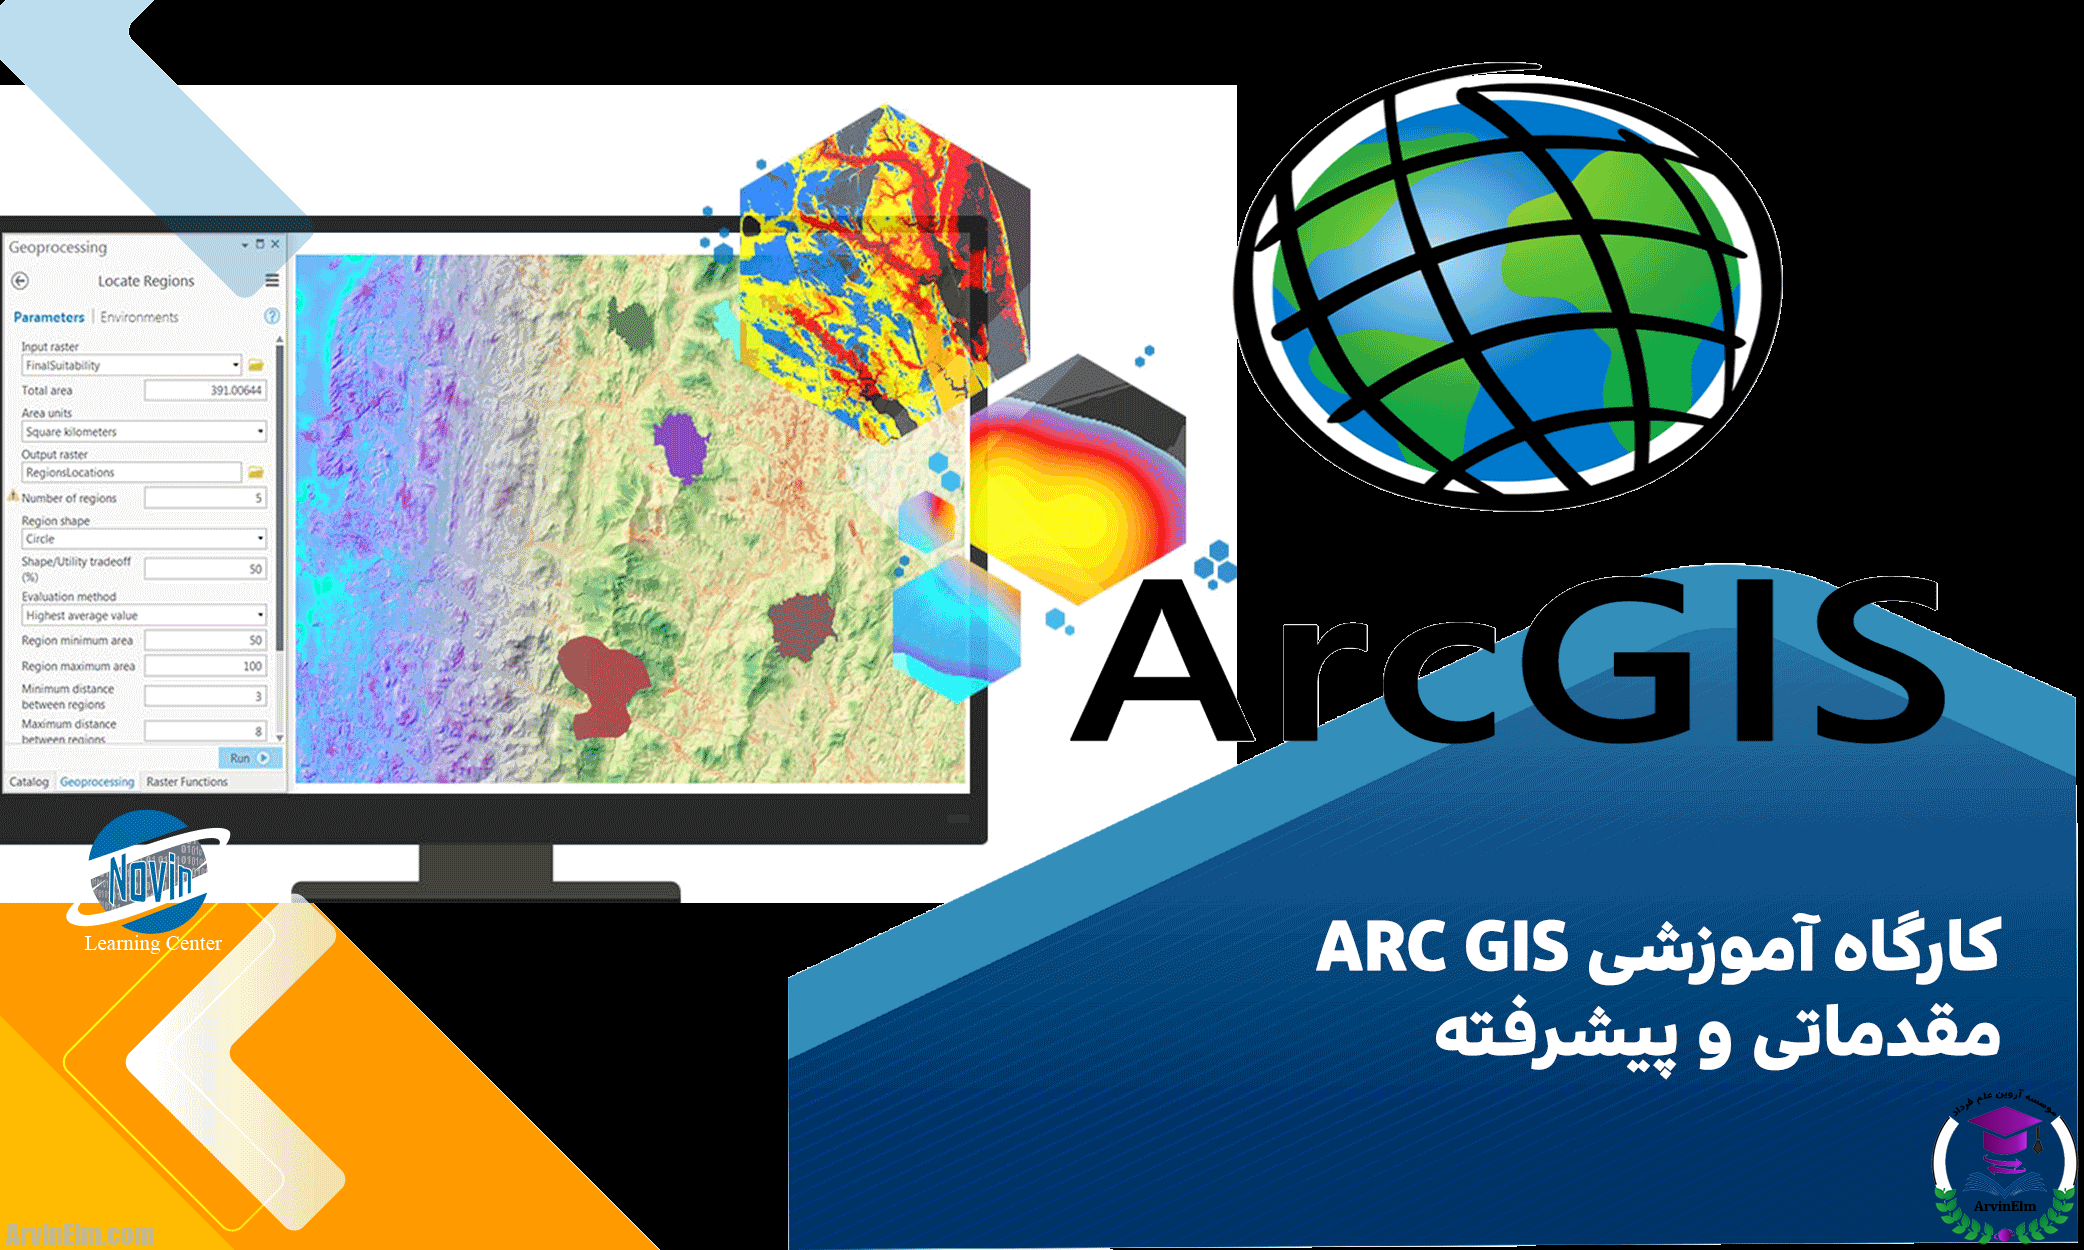 کارگاه آموزشی ARC GIS مقدماتی و پیشرفته